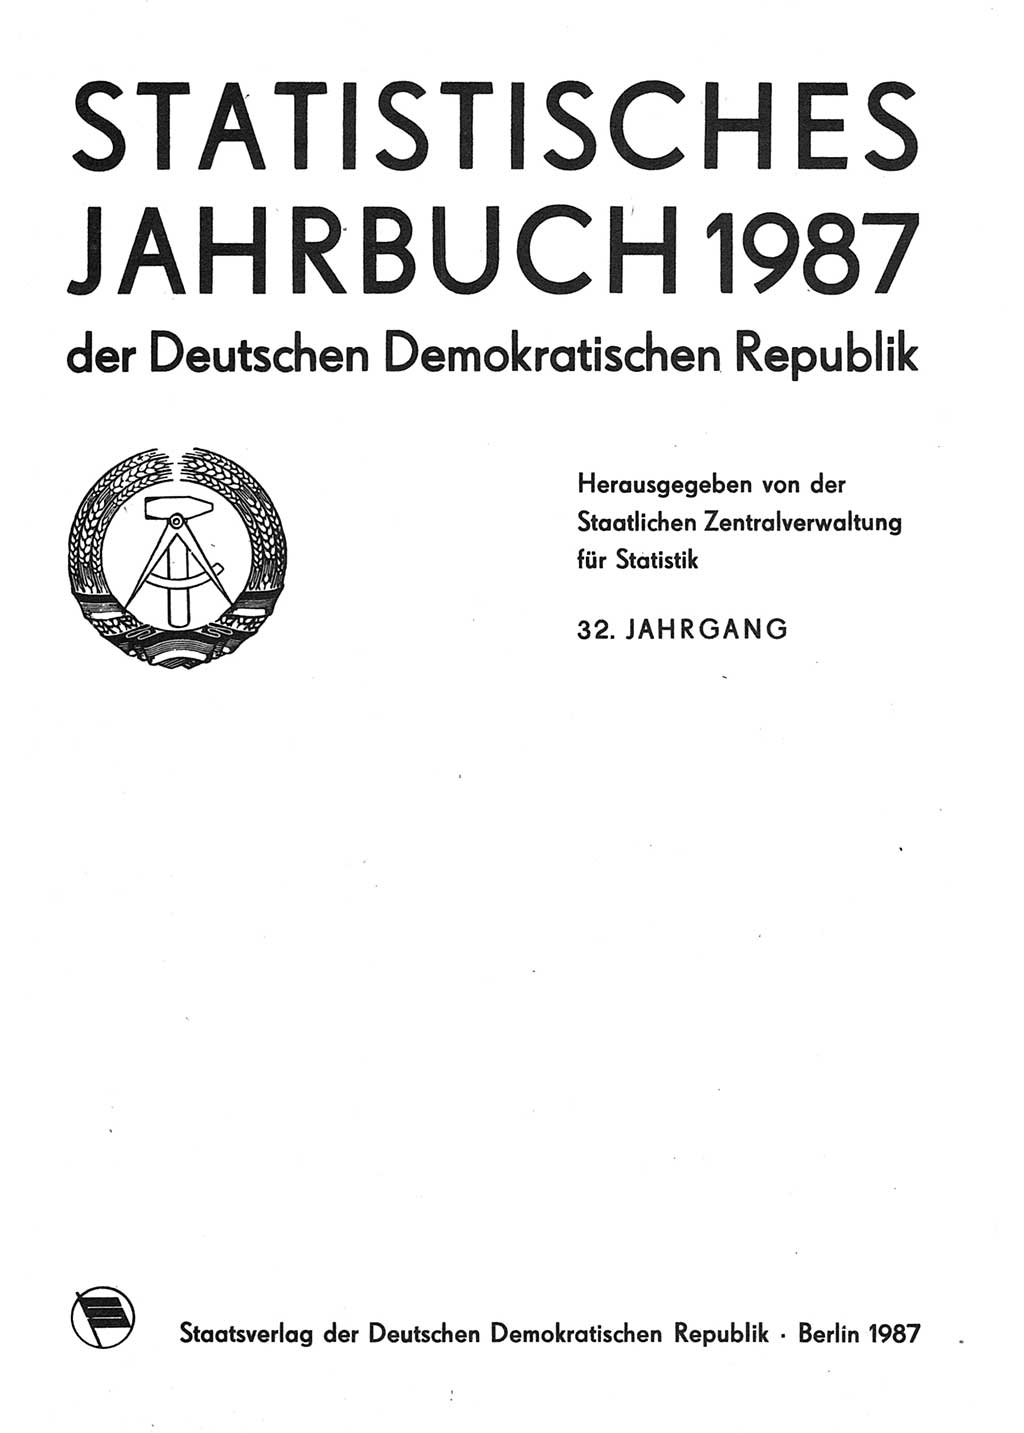 Statistisches Jahrbuch der Deutschen Demokratischen Republik (DDR) 1987, Seite 1 (Stat. Jb. DDR 1987, S. 1)